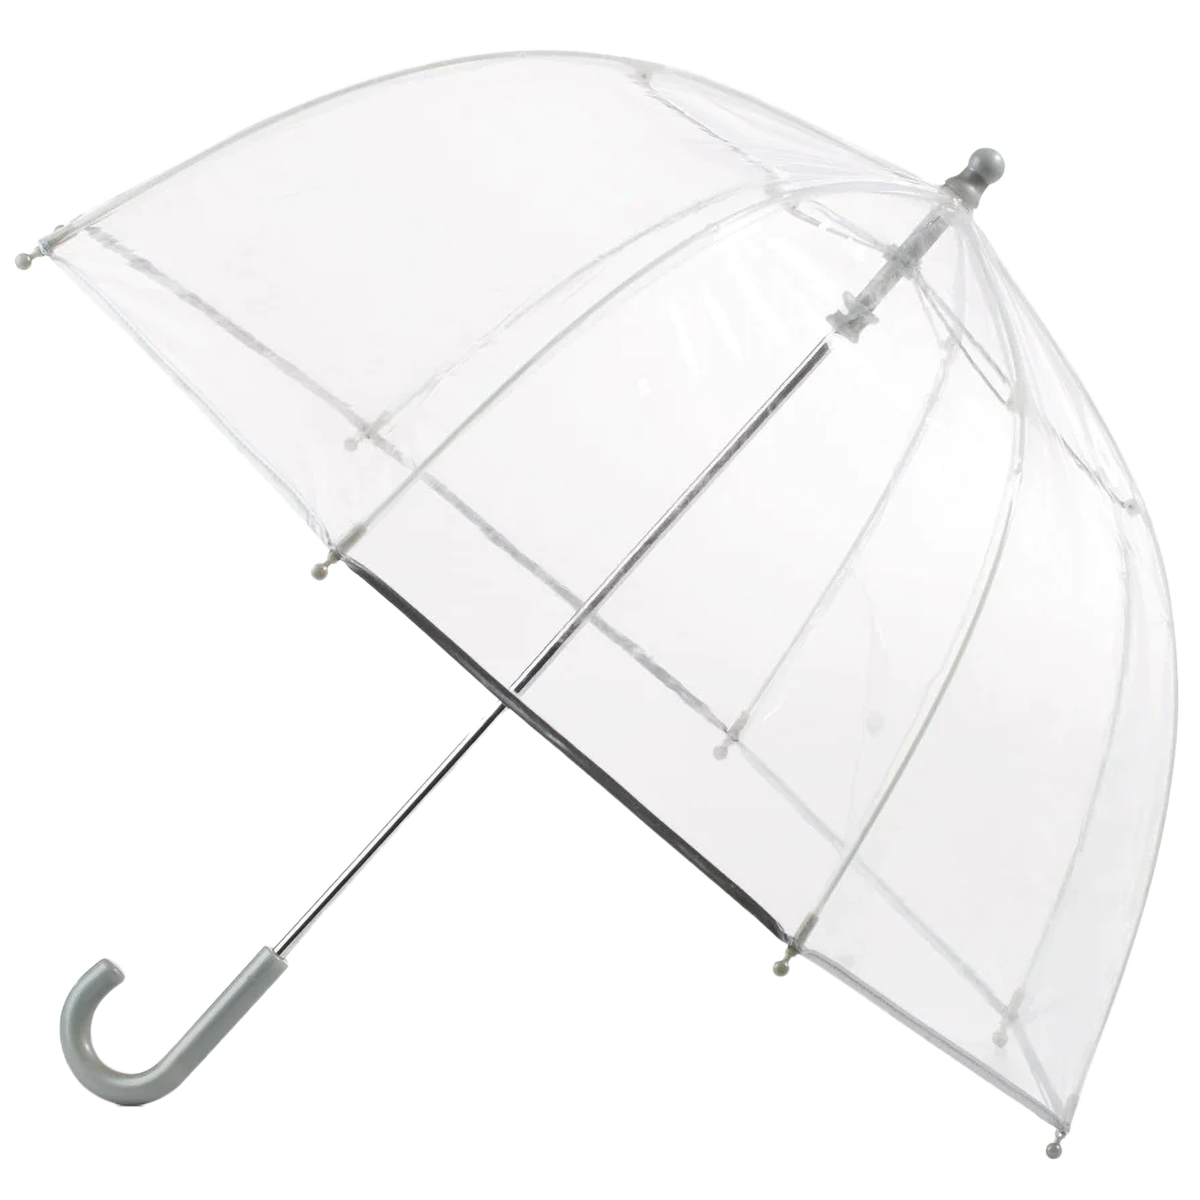 totes clear bubble umbrella